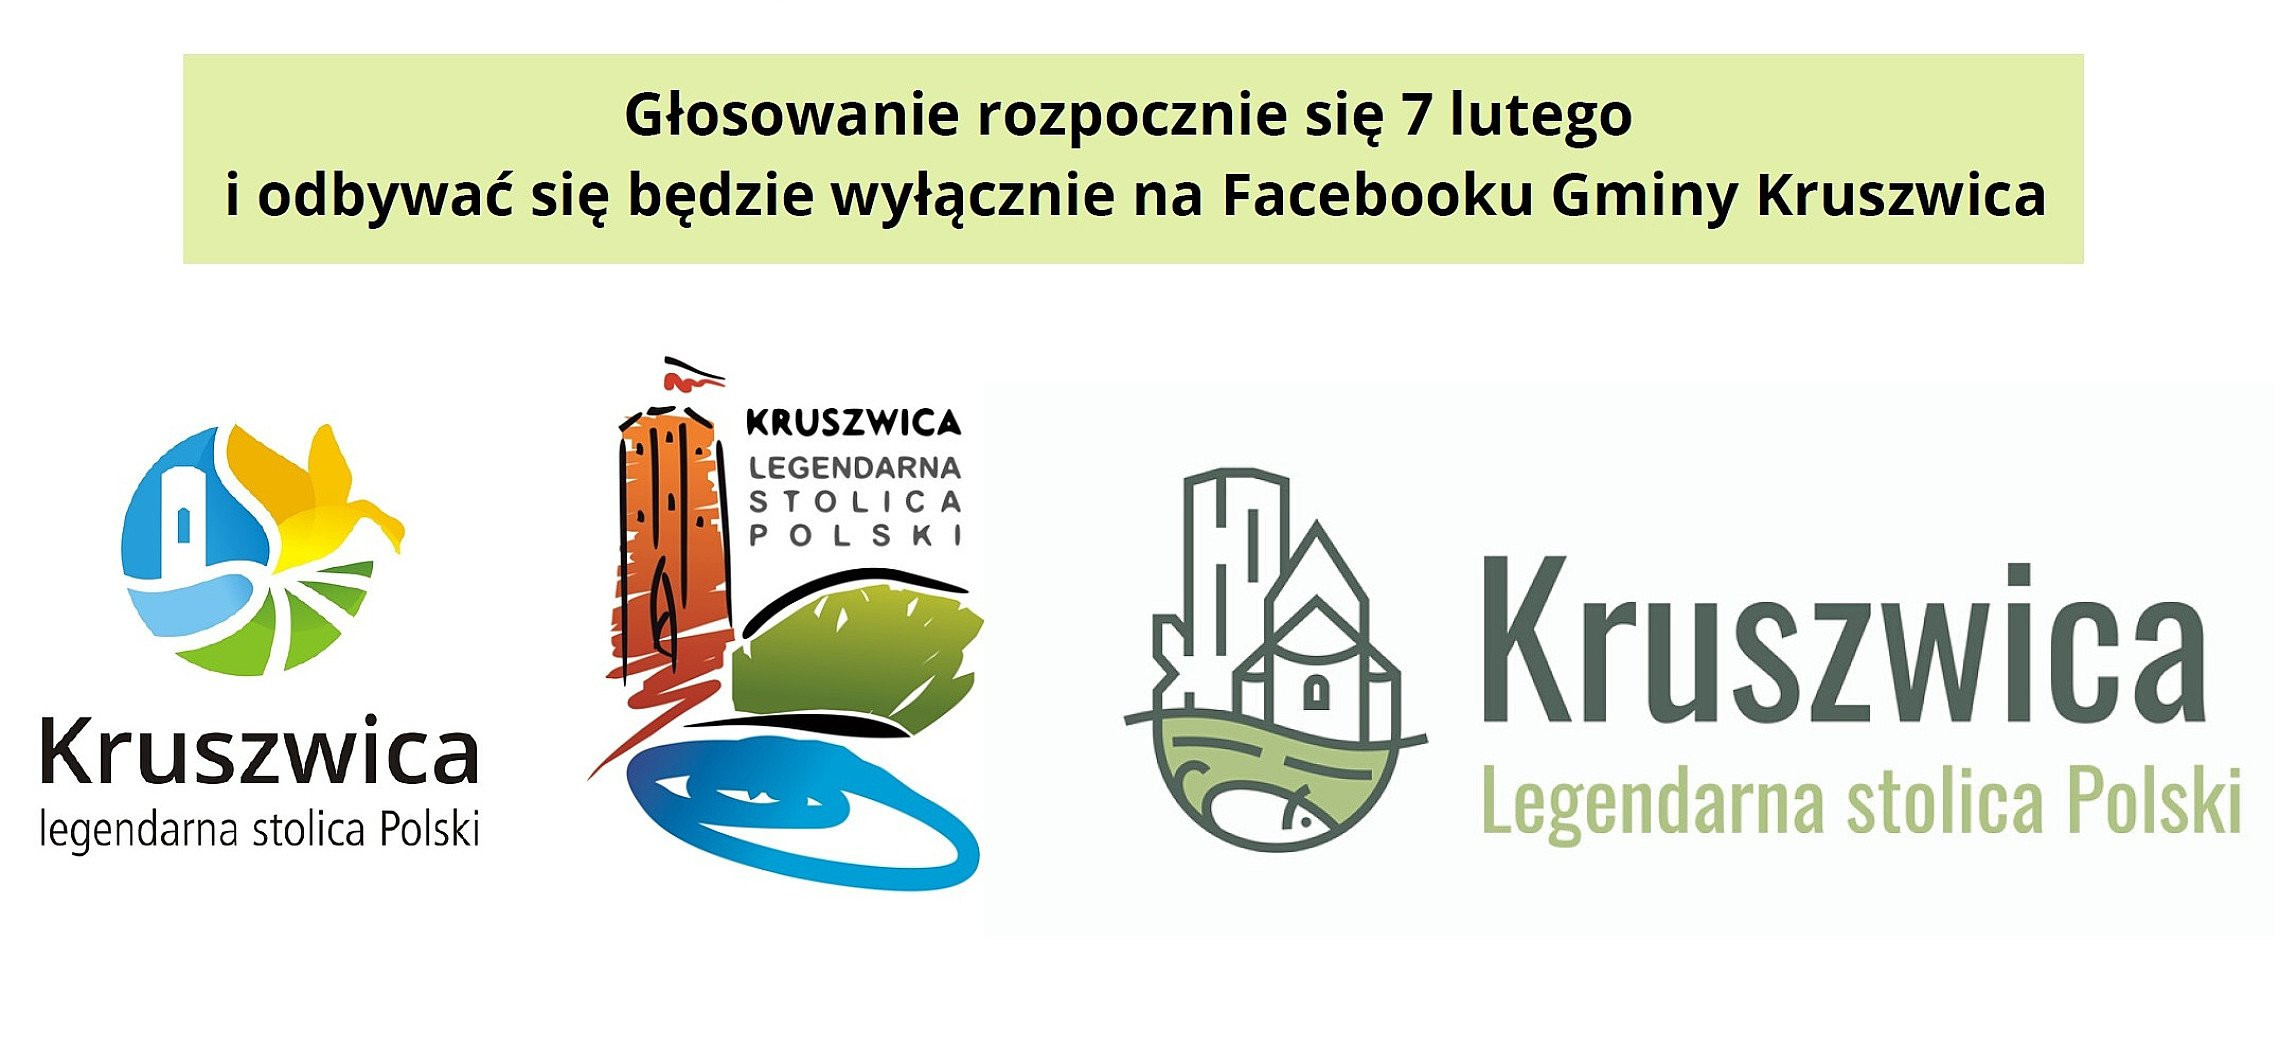 Kruszwica - Oto projekty na logo Kruszwicy. Będzie głosowanie